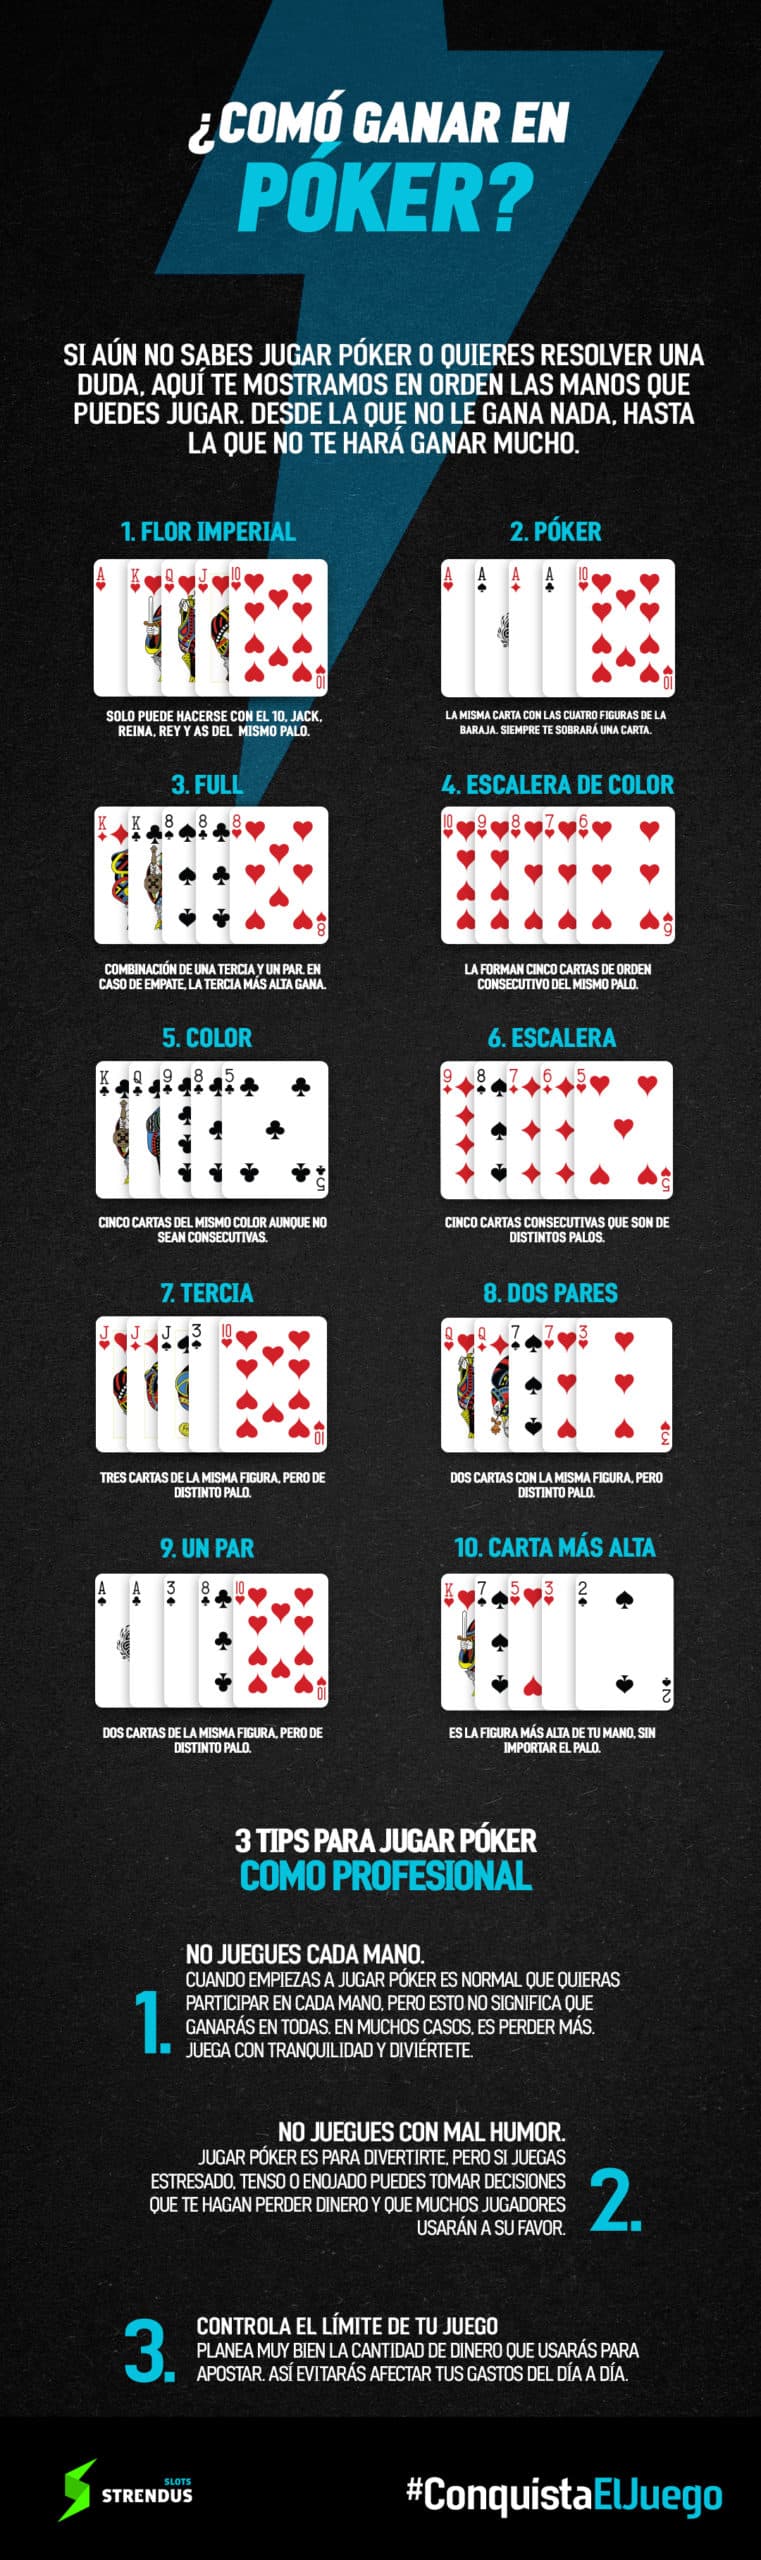 4bet poker